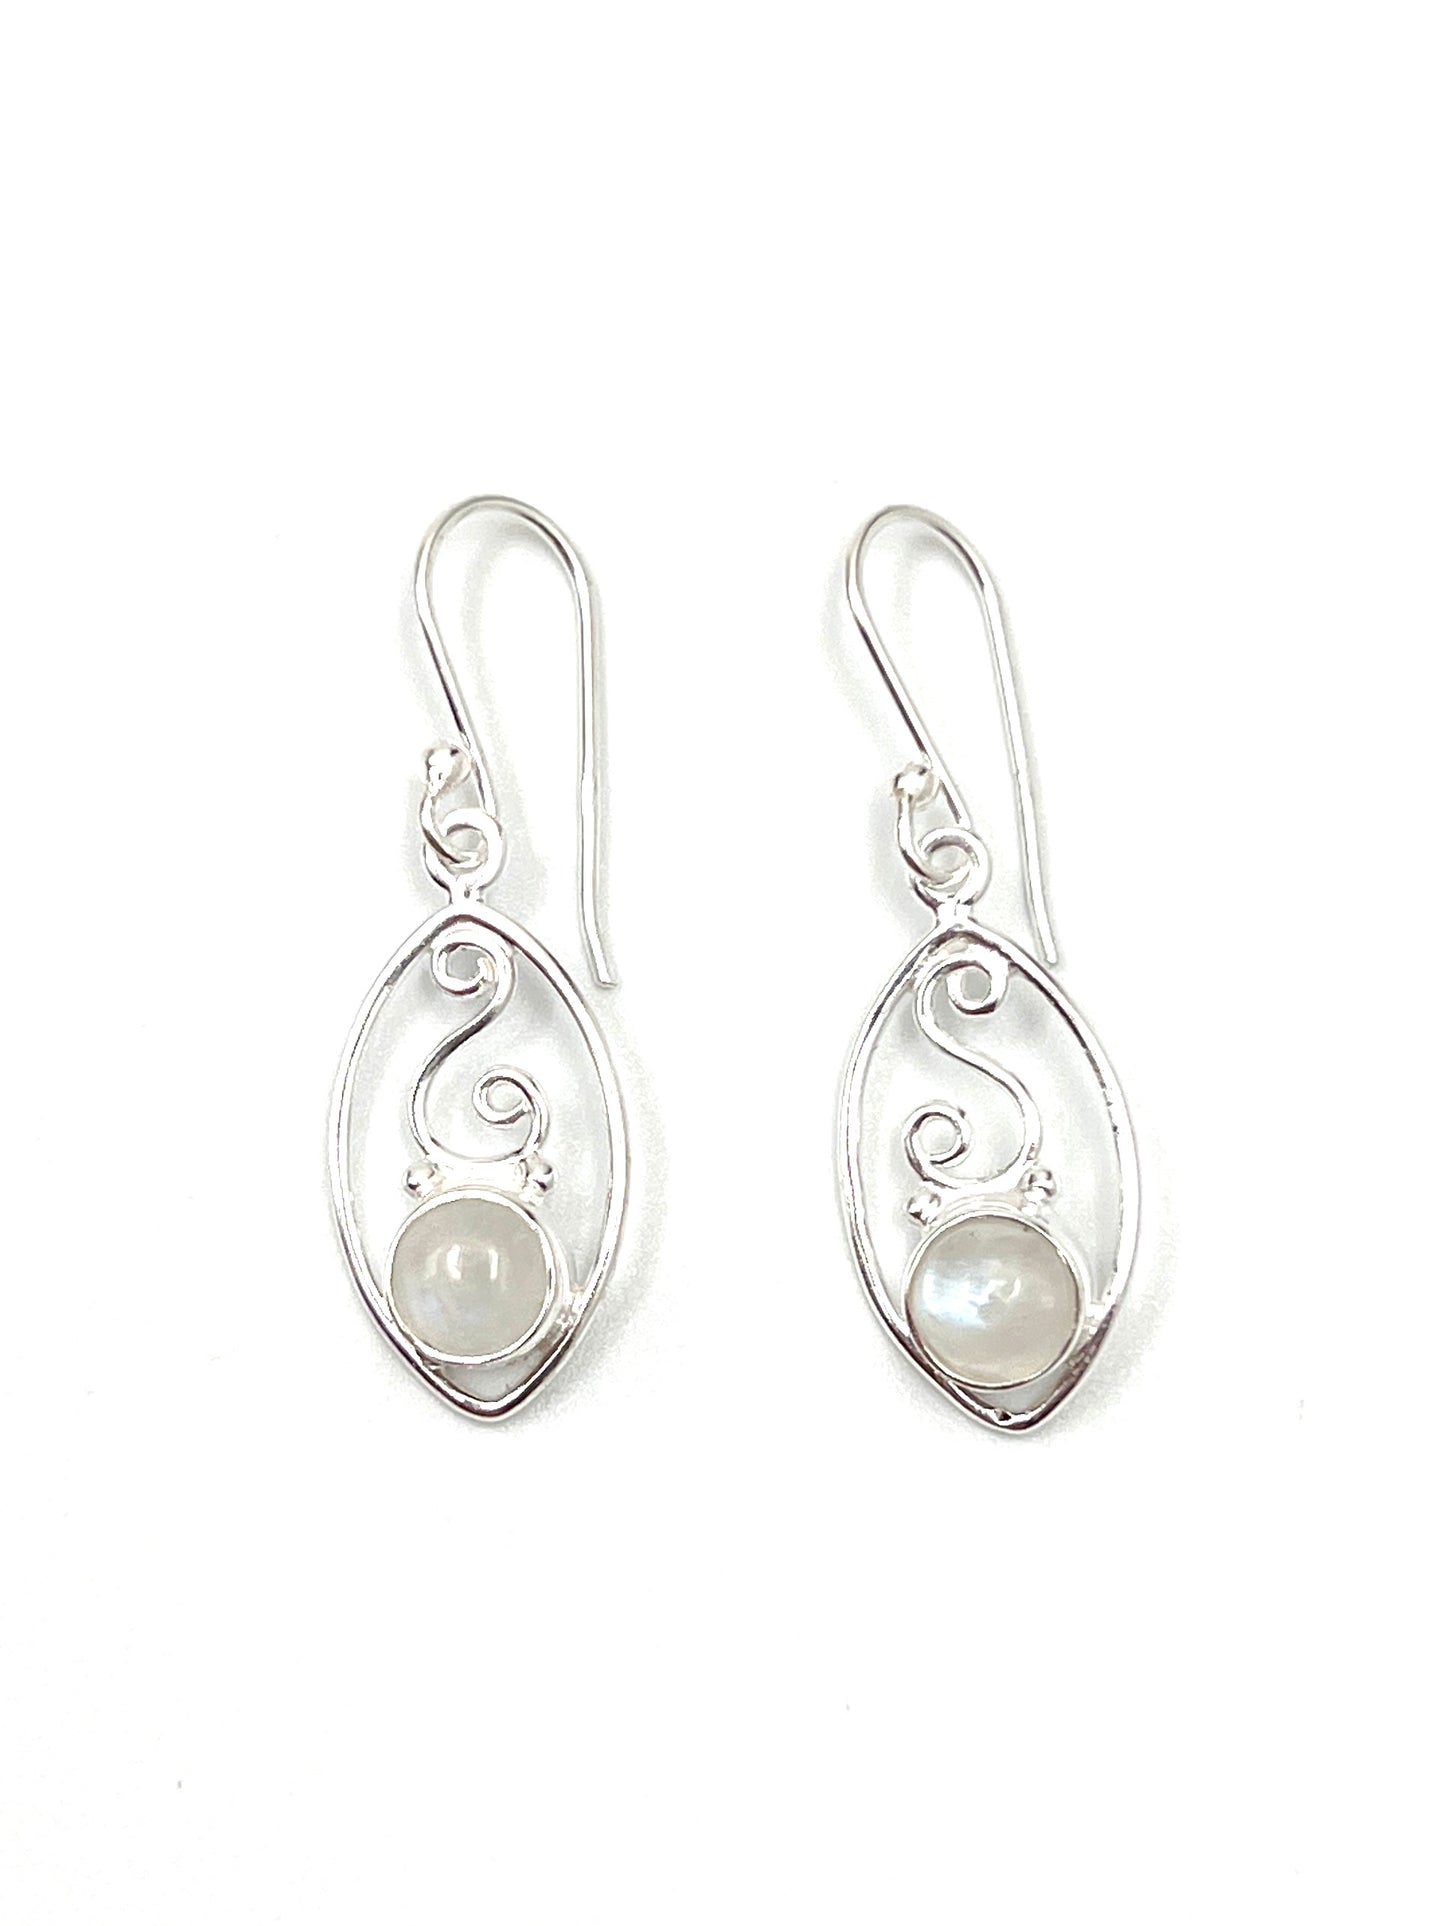 Gemstone Swirl Earrings